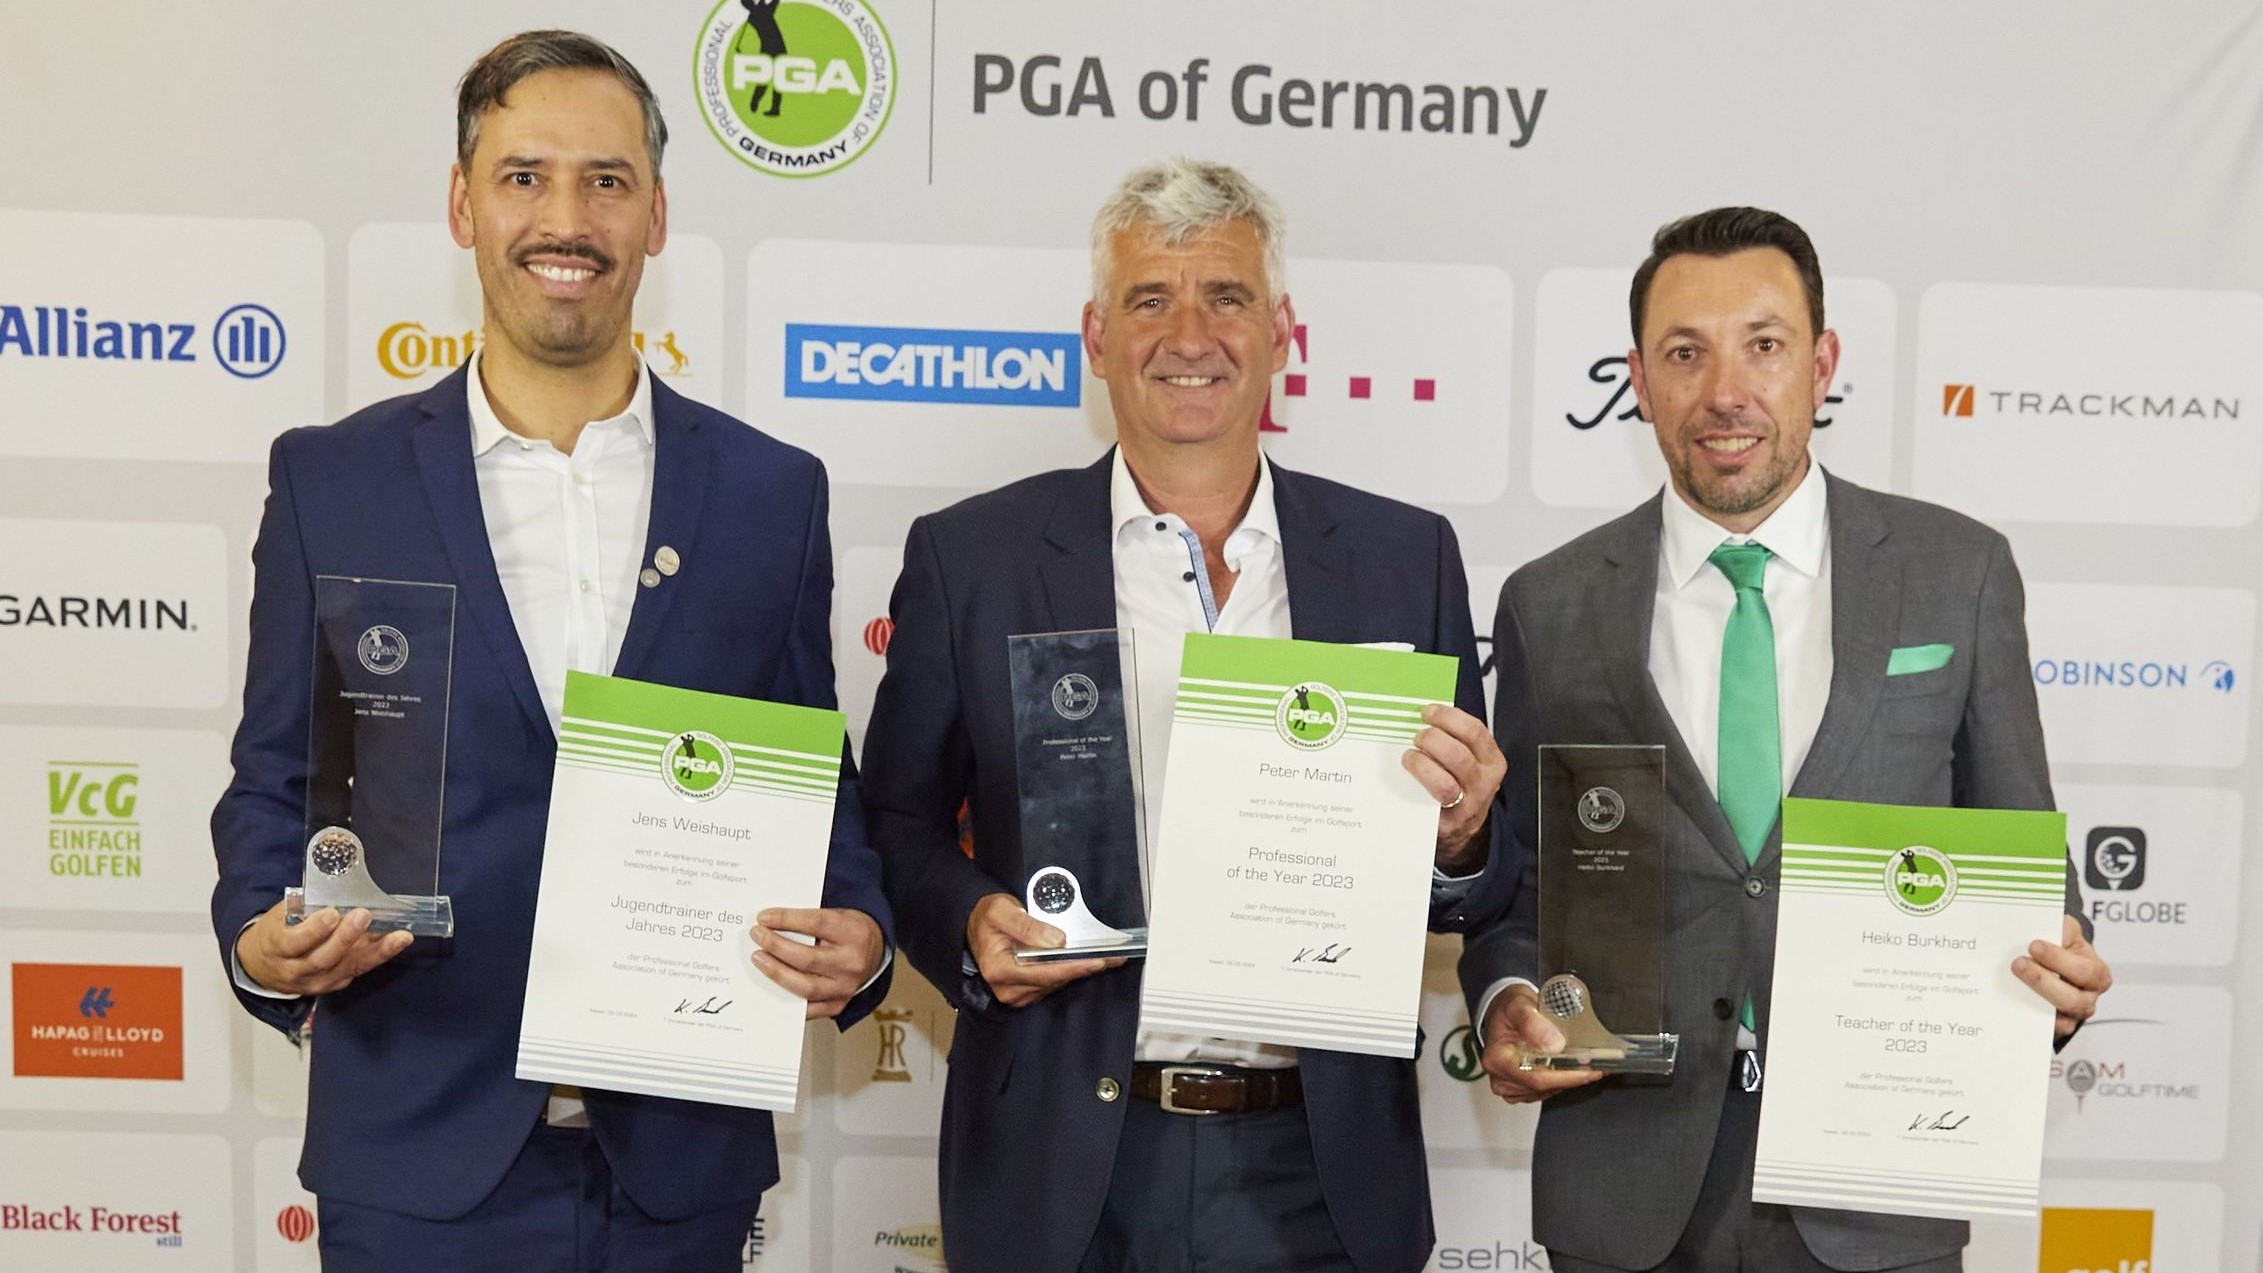 Ausgezeichnet (v.l.): Jens Weishaupt (bester Jugendtrainer), Peter Martin (PGA Professional of the Year) und Heiko Burkhard (Trainer des Jahres 2023) nahmen die Awards der PGA of Germany in Kassel entgegen.